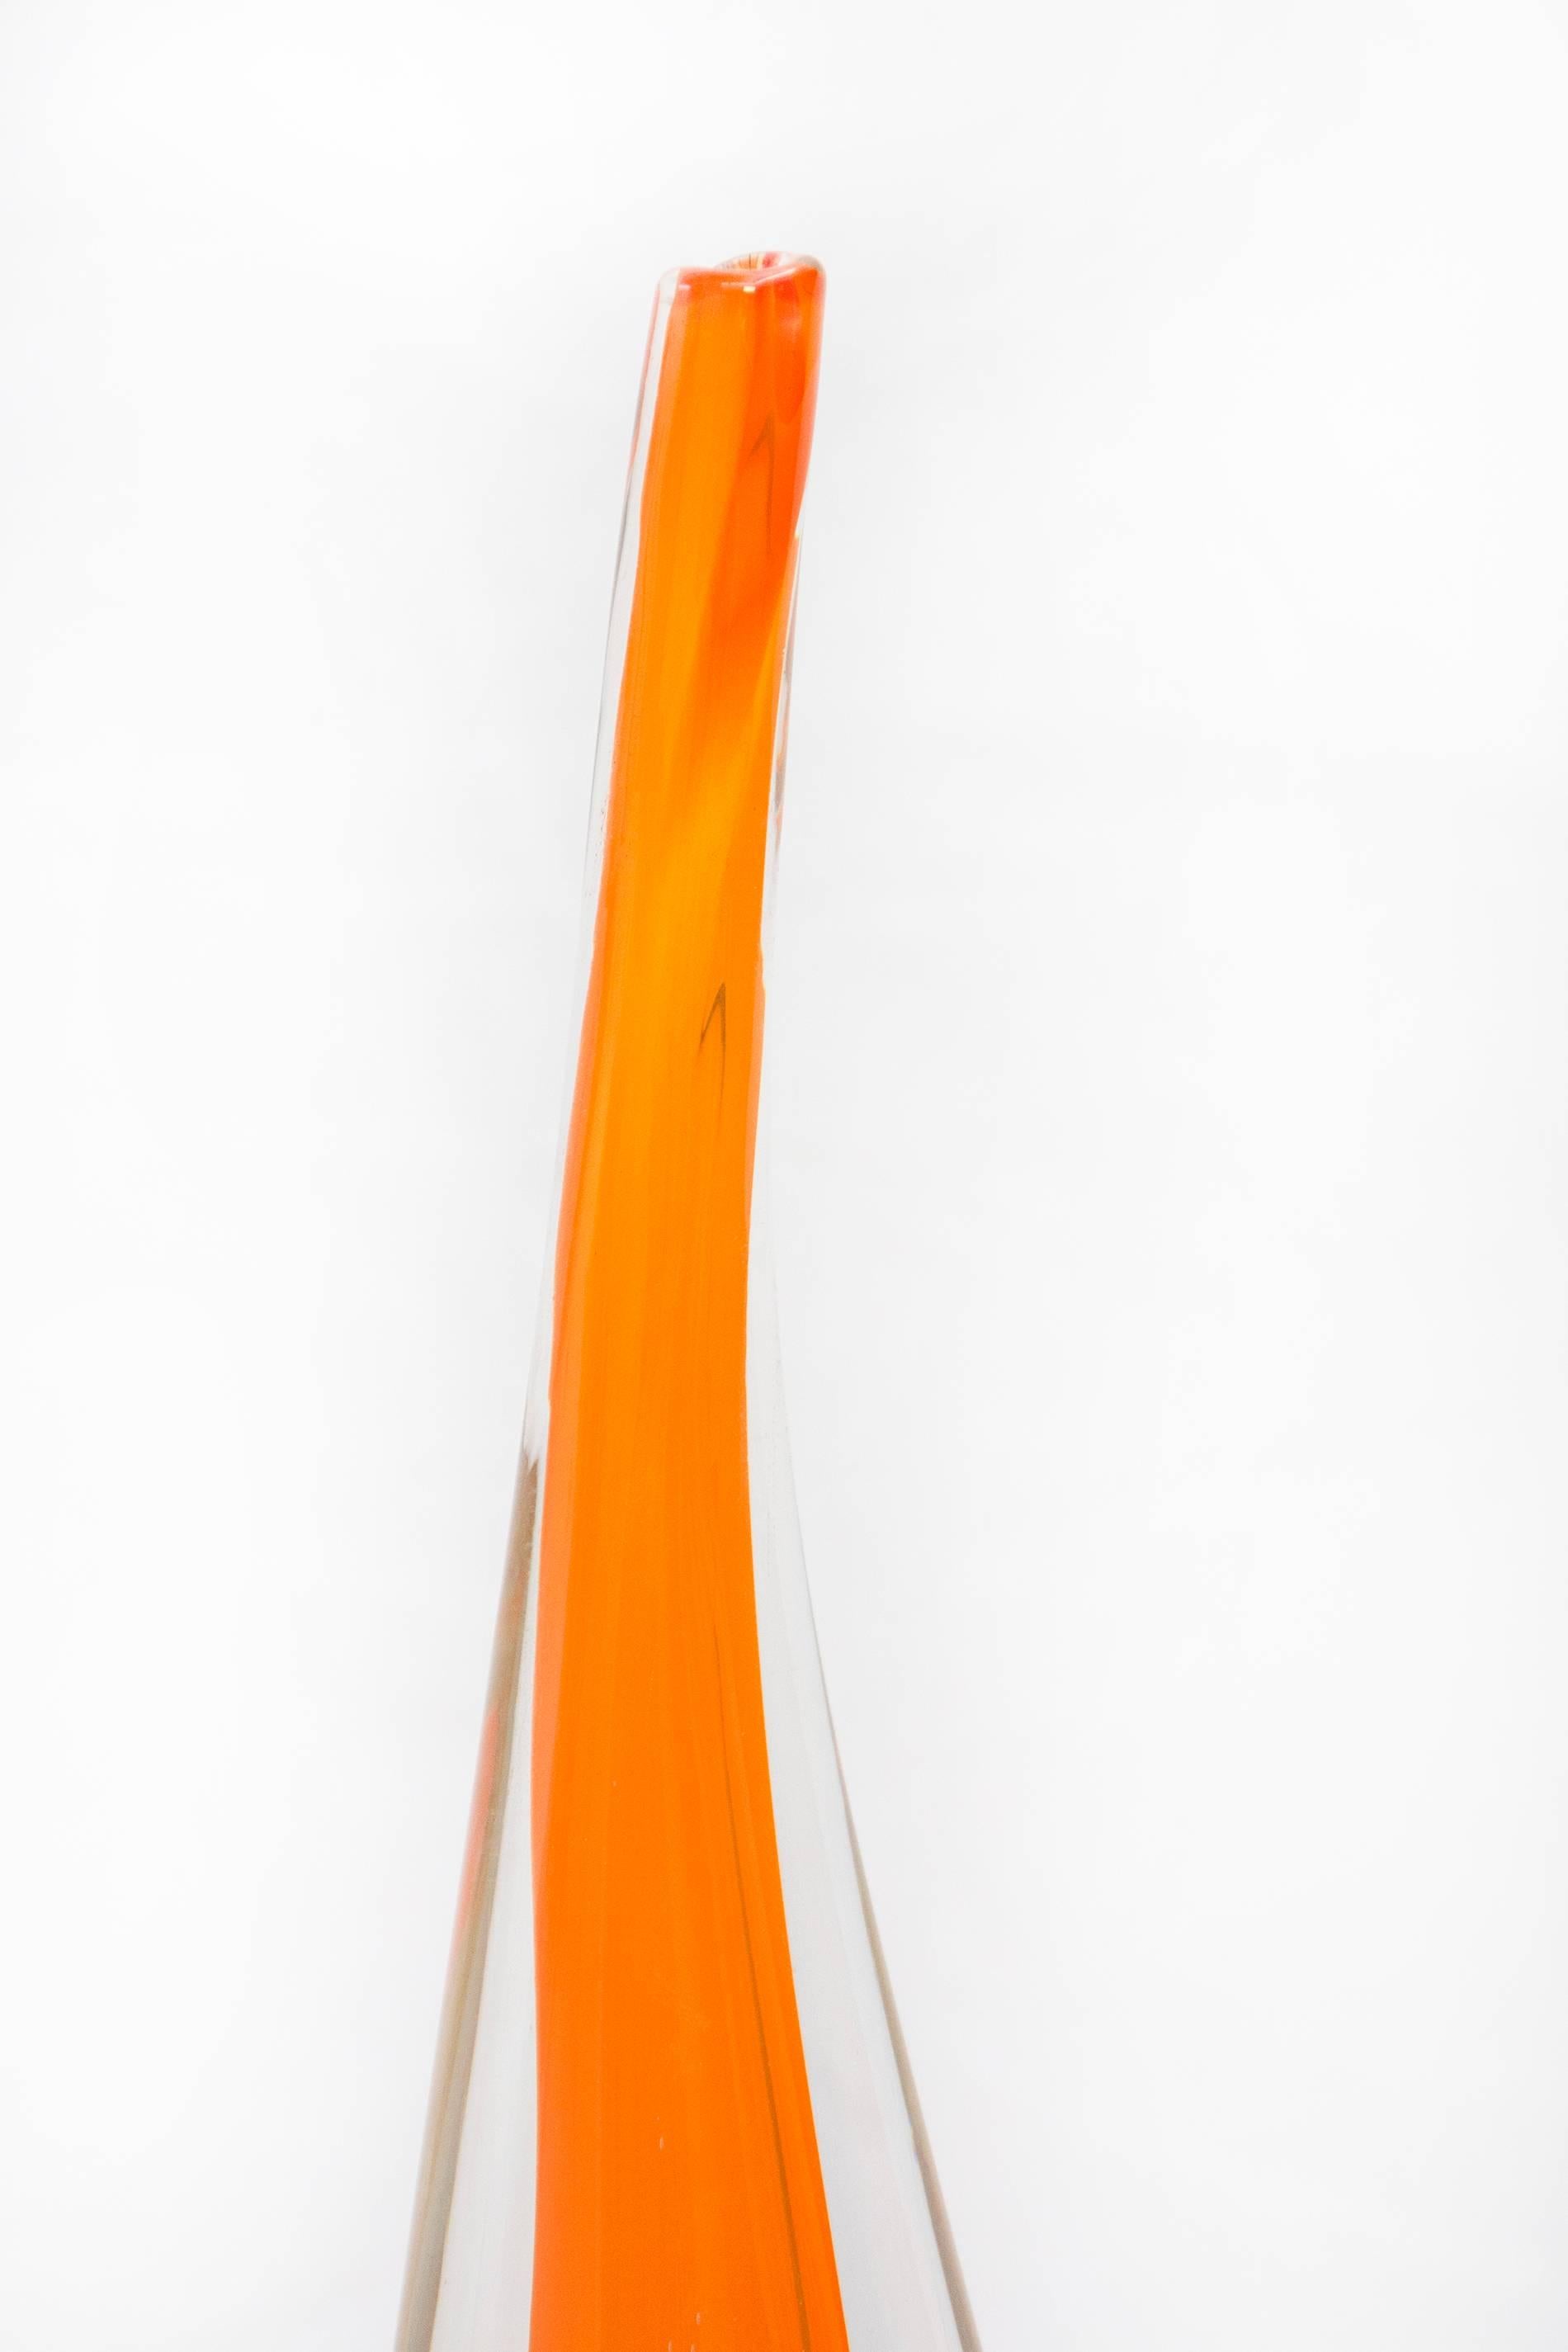 Evolution Bottle - Tall Orange - American Modern Sculpture by Eileen Gordon